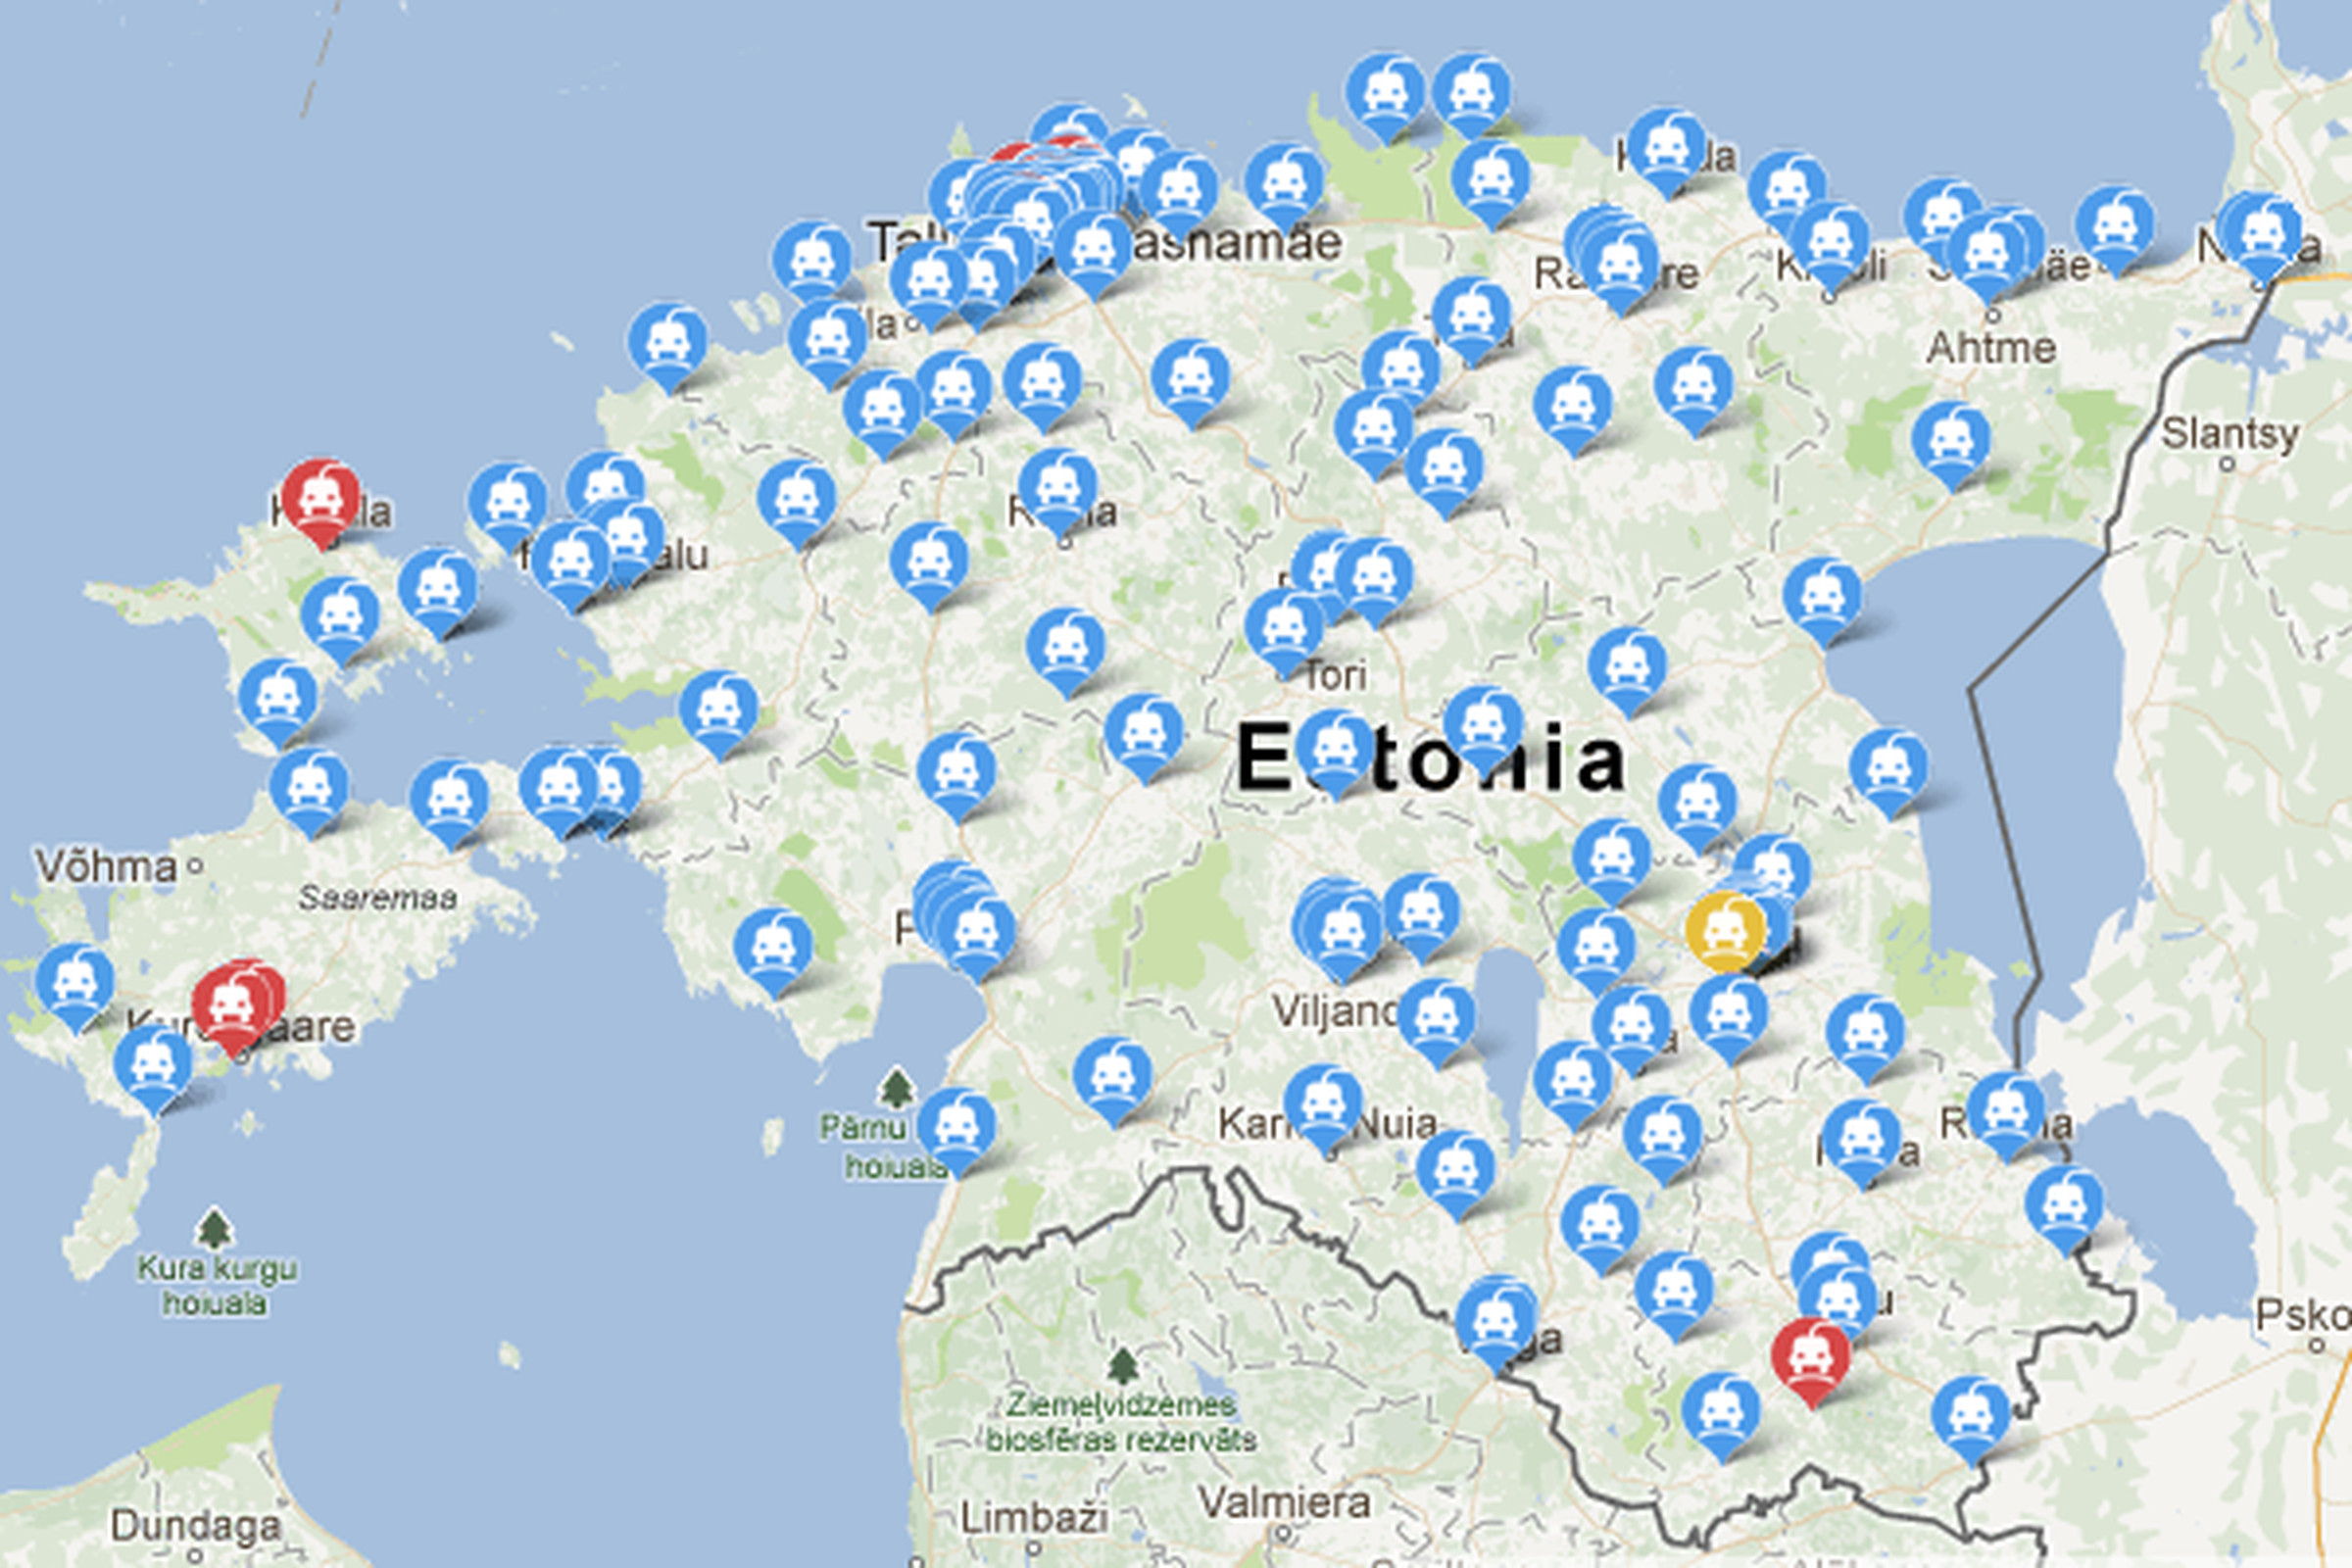 Estonia EV network